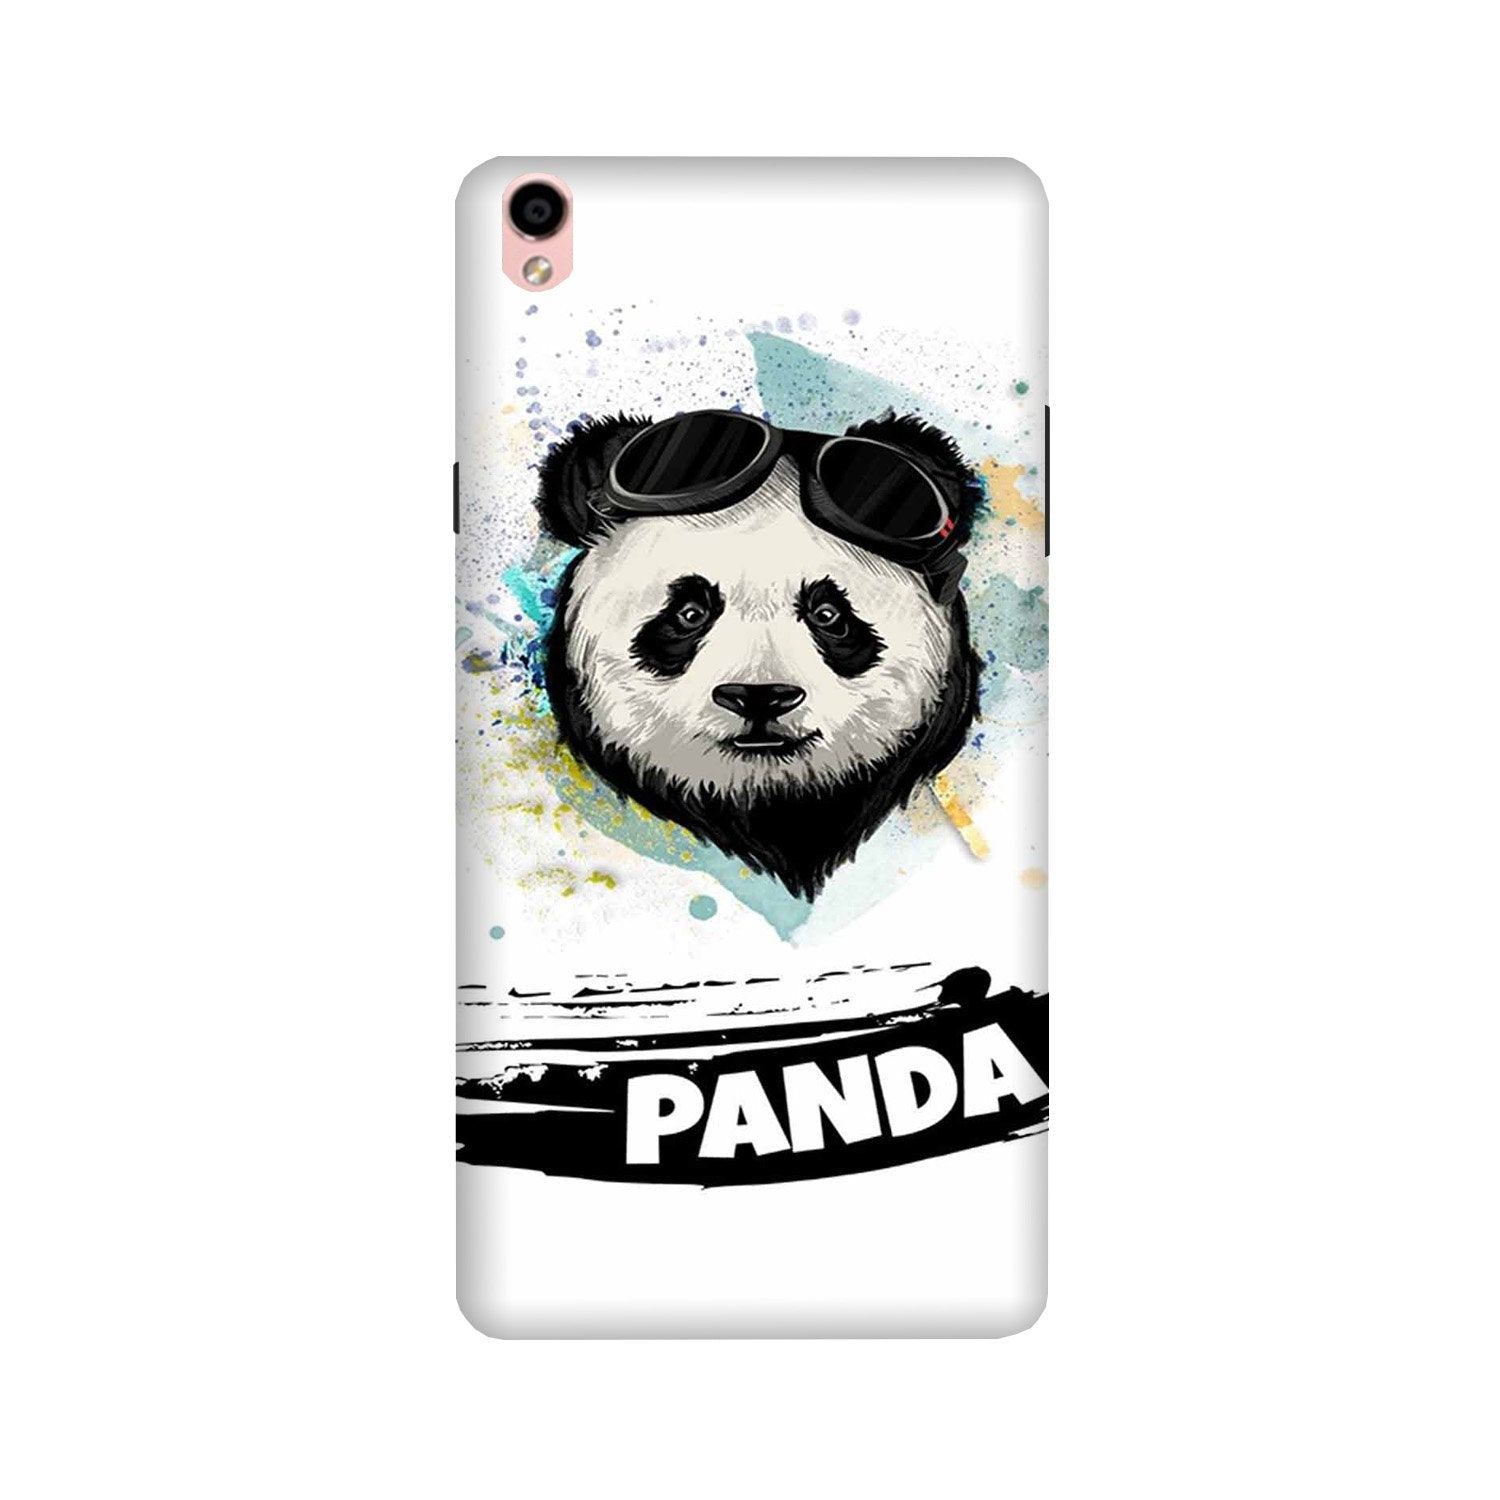 Panda Mobile Back Case for Vivo V3 Max (Design - 319)